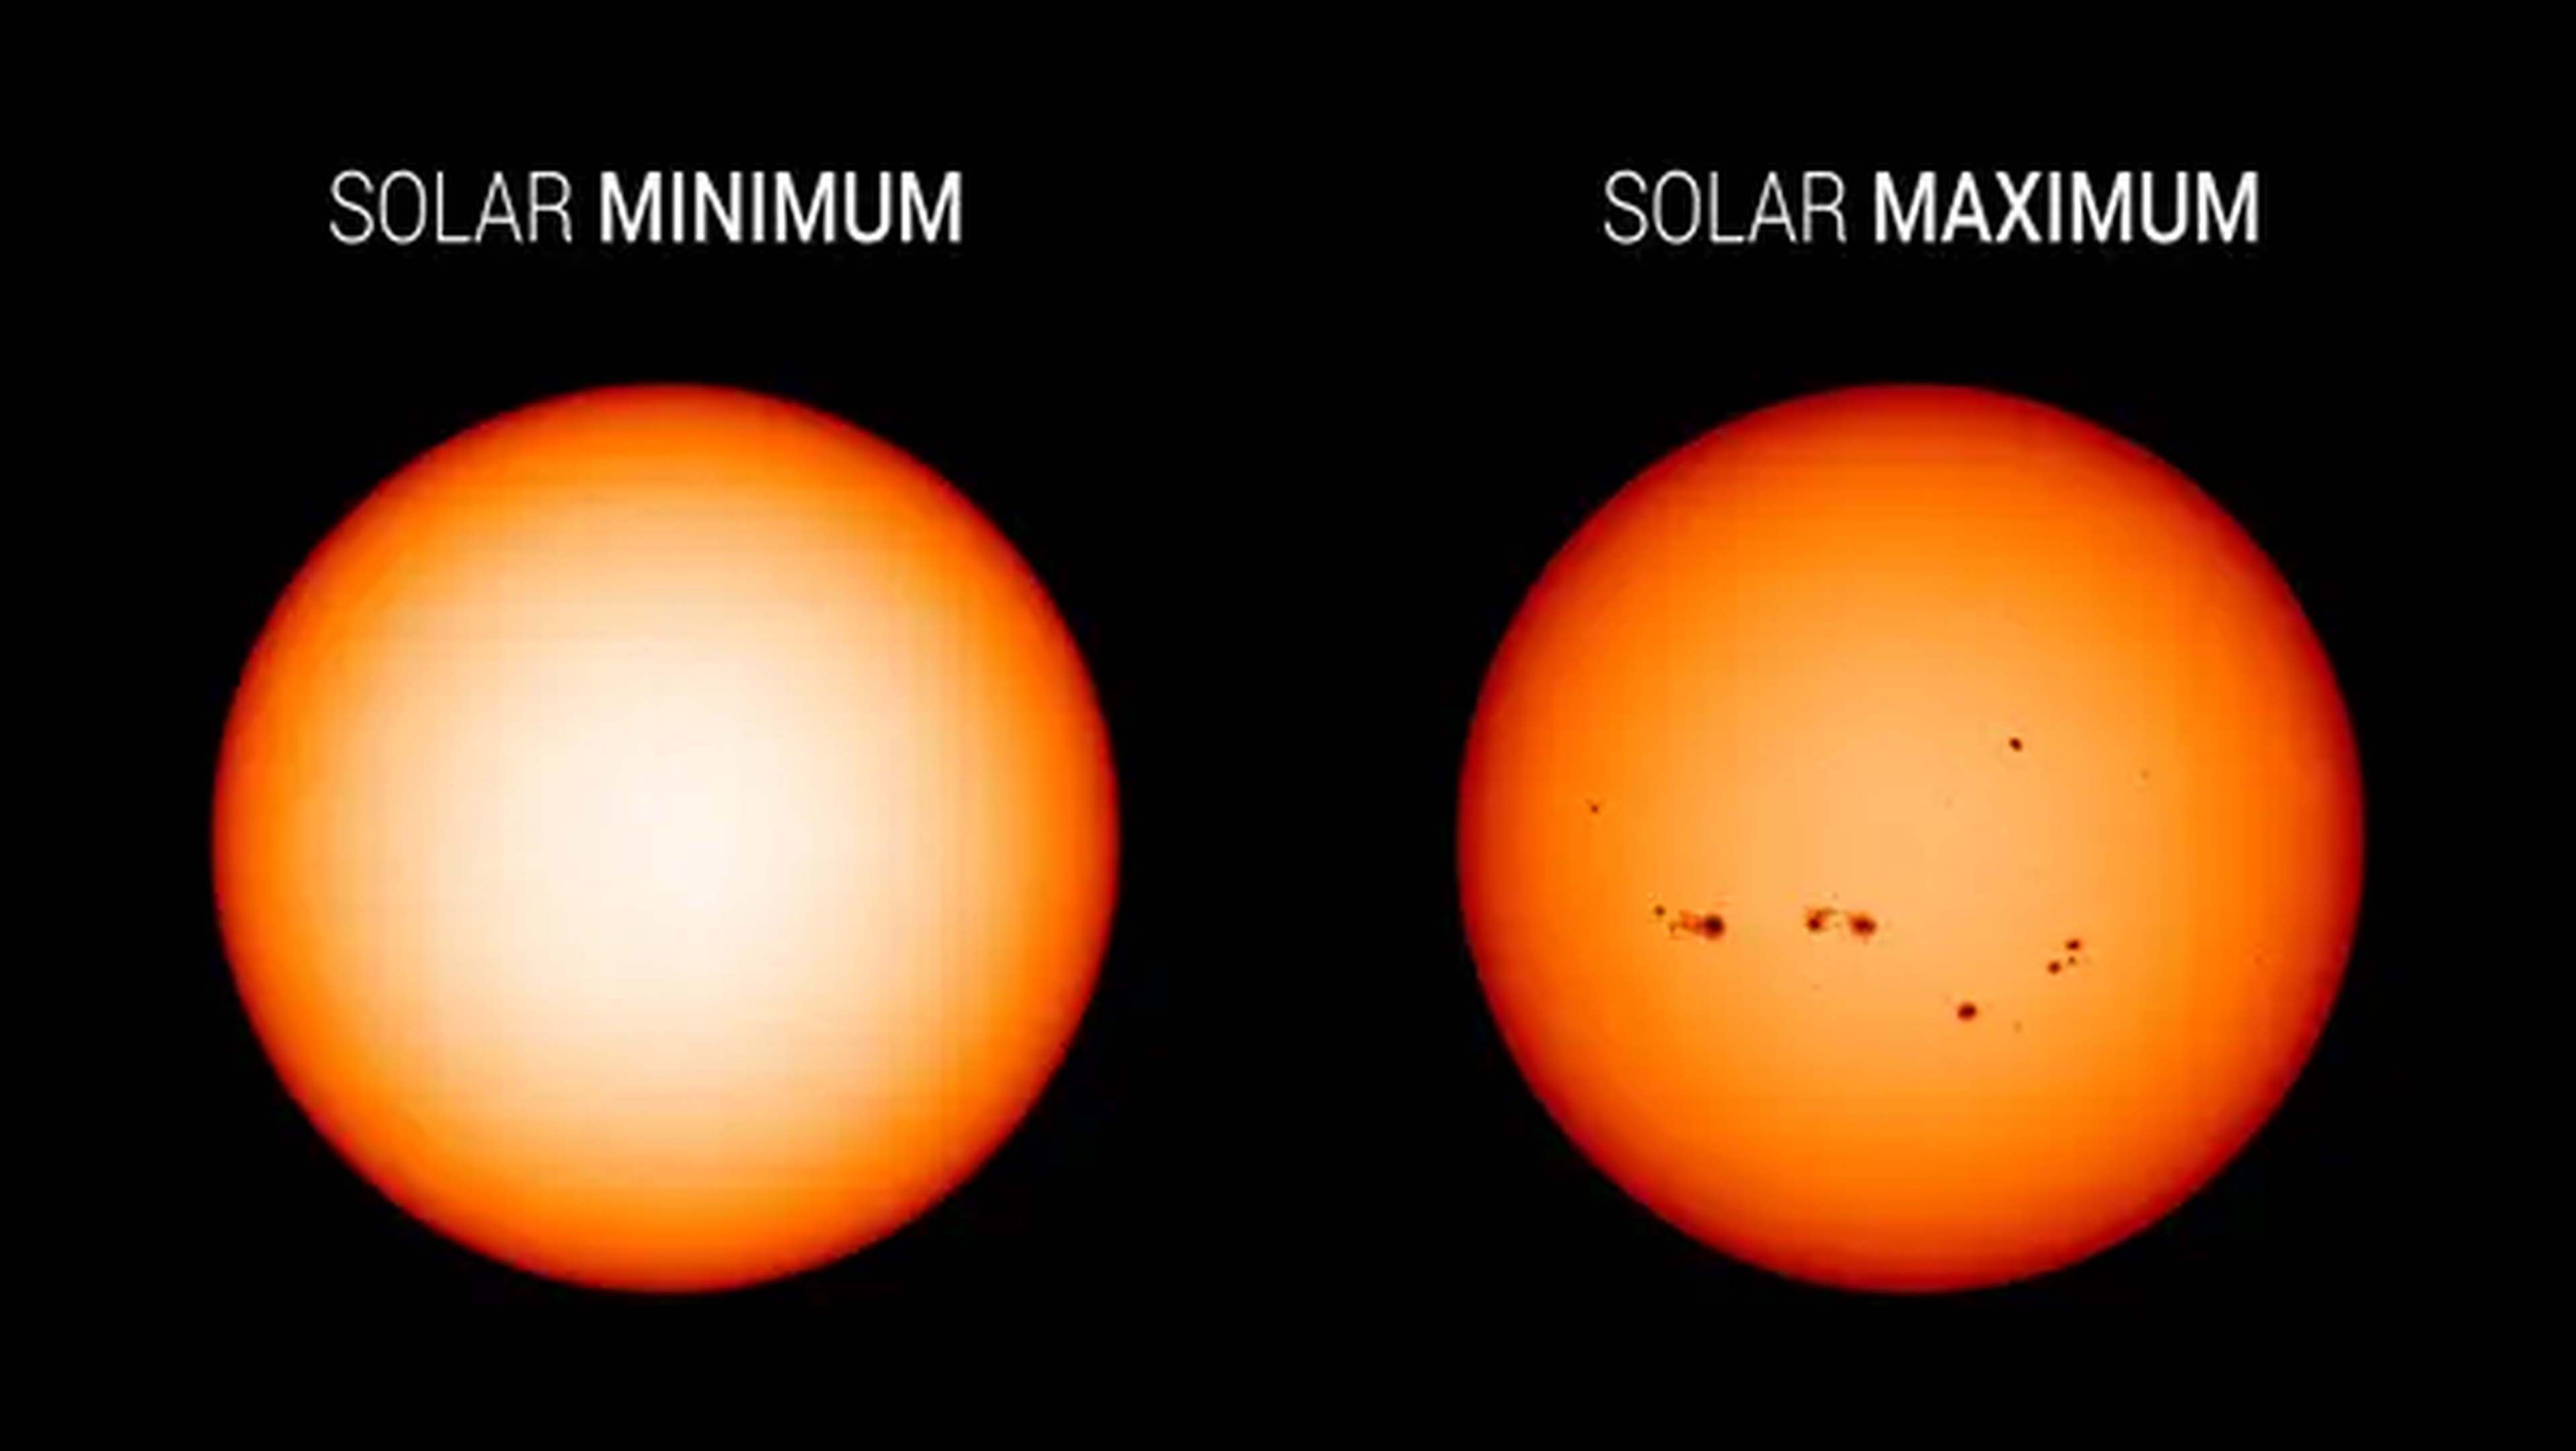 El sol tiene más manchas durante el máximo solar.